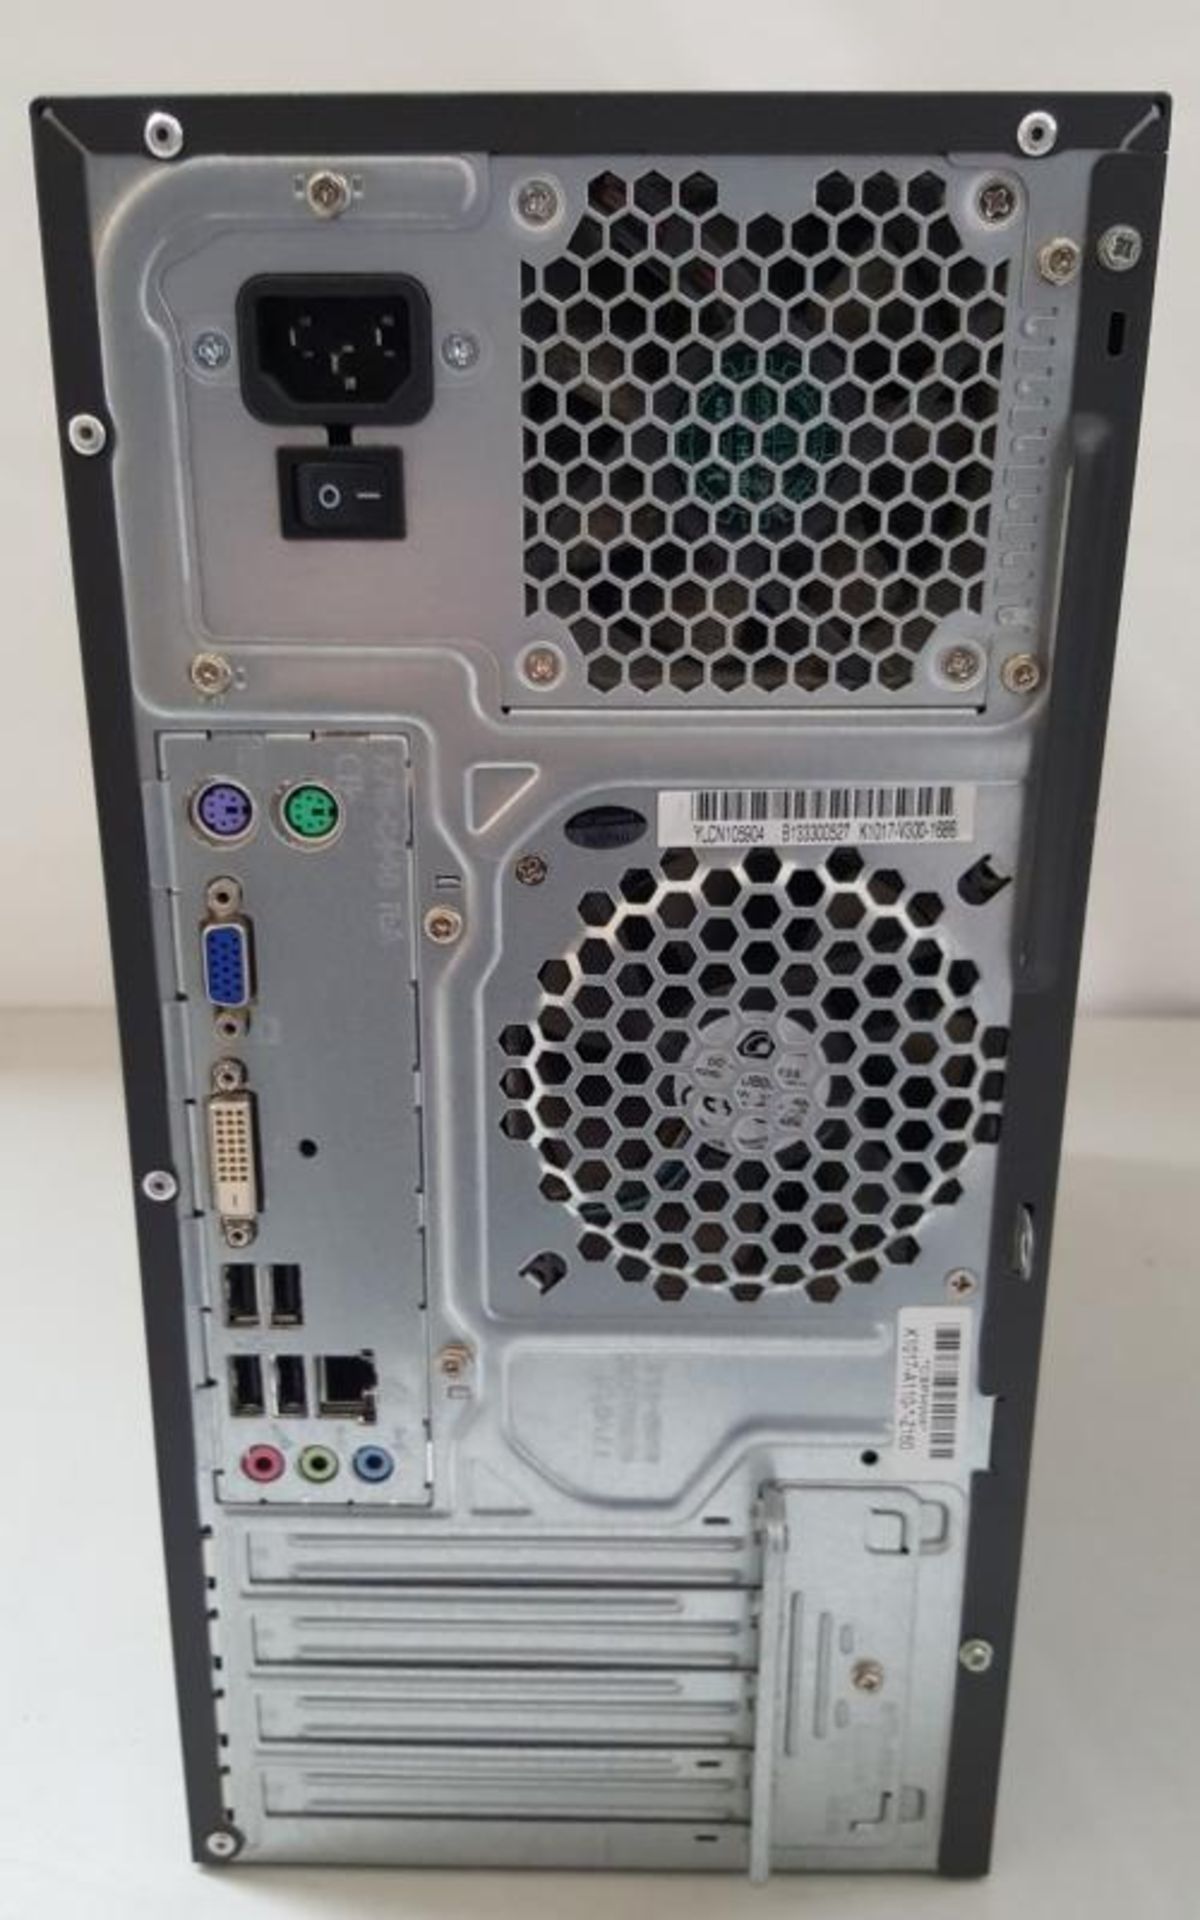 1 x Fujitsu Esprimo P400 85+ Desktop Computer With Intel i3 3220 3.3Ghz &amp; 4GB RAM, Does Not Com - Image 5 of 5